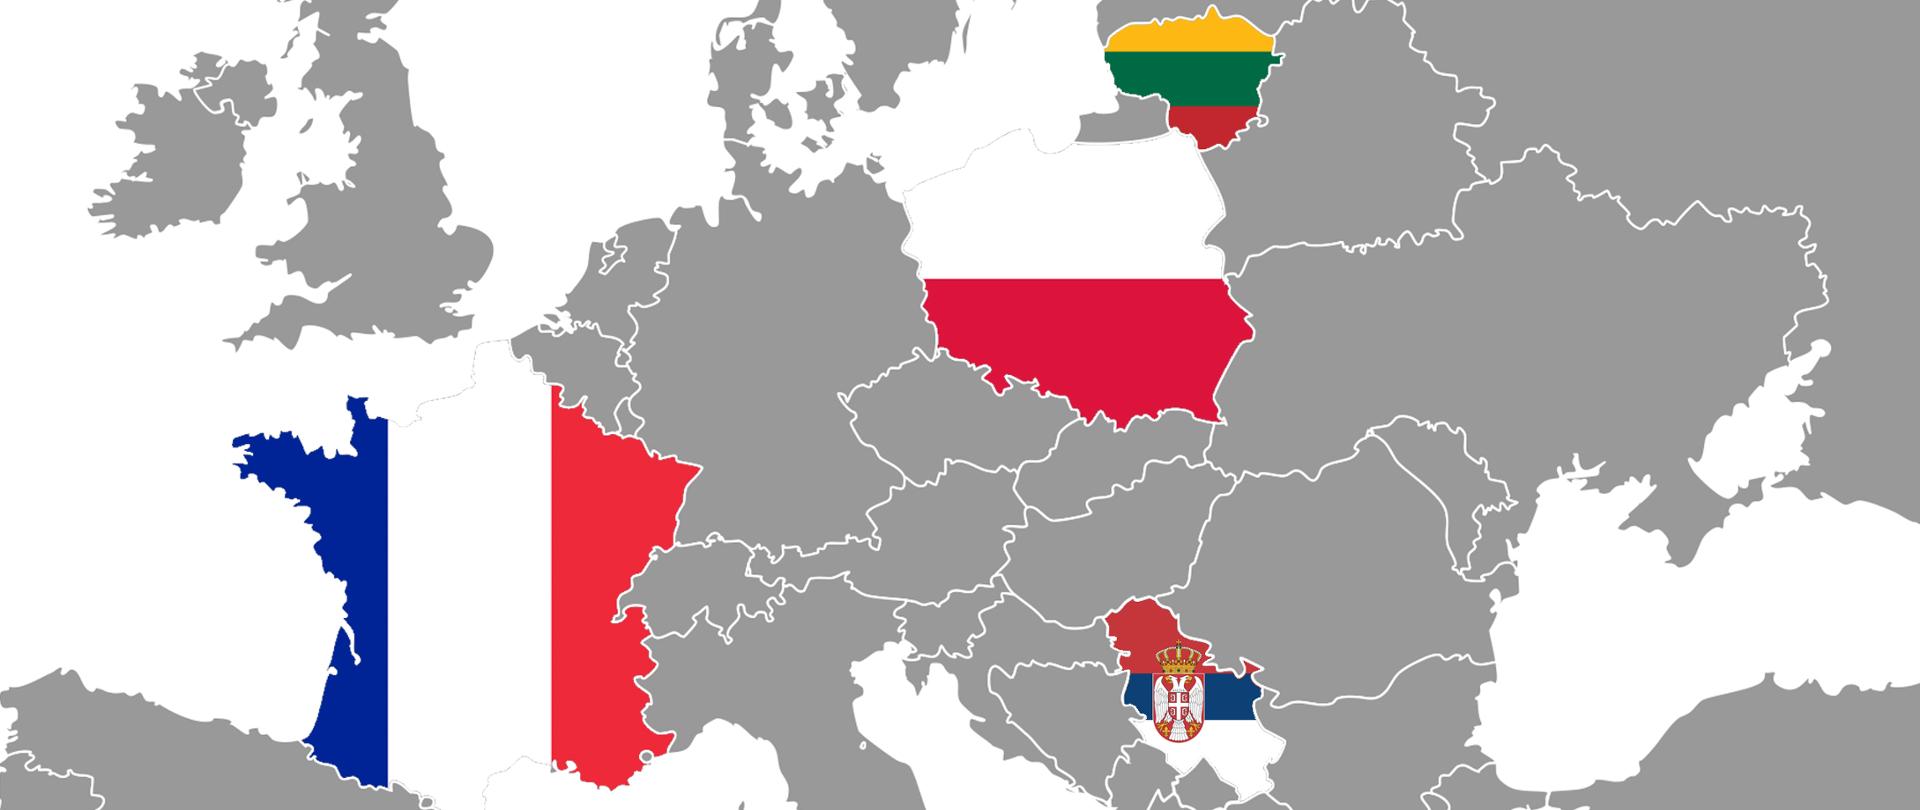 ARiMR wraz z Litwinami i Francuzami będzie realizowała unijny projekt w Serbii 